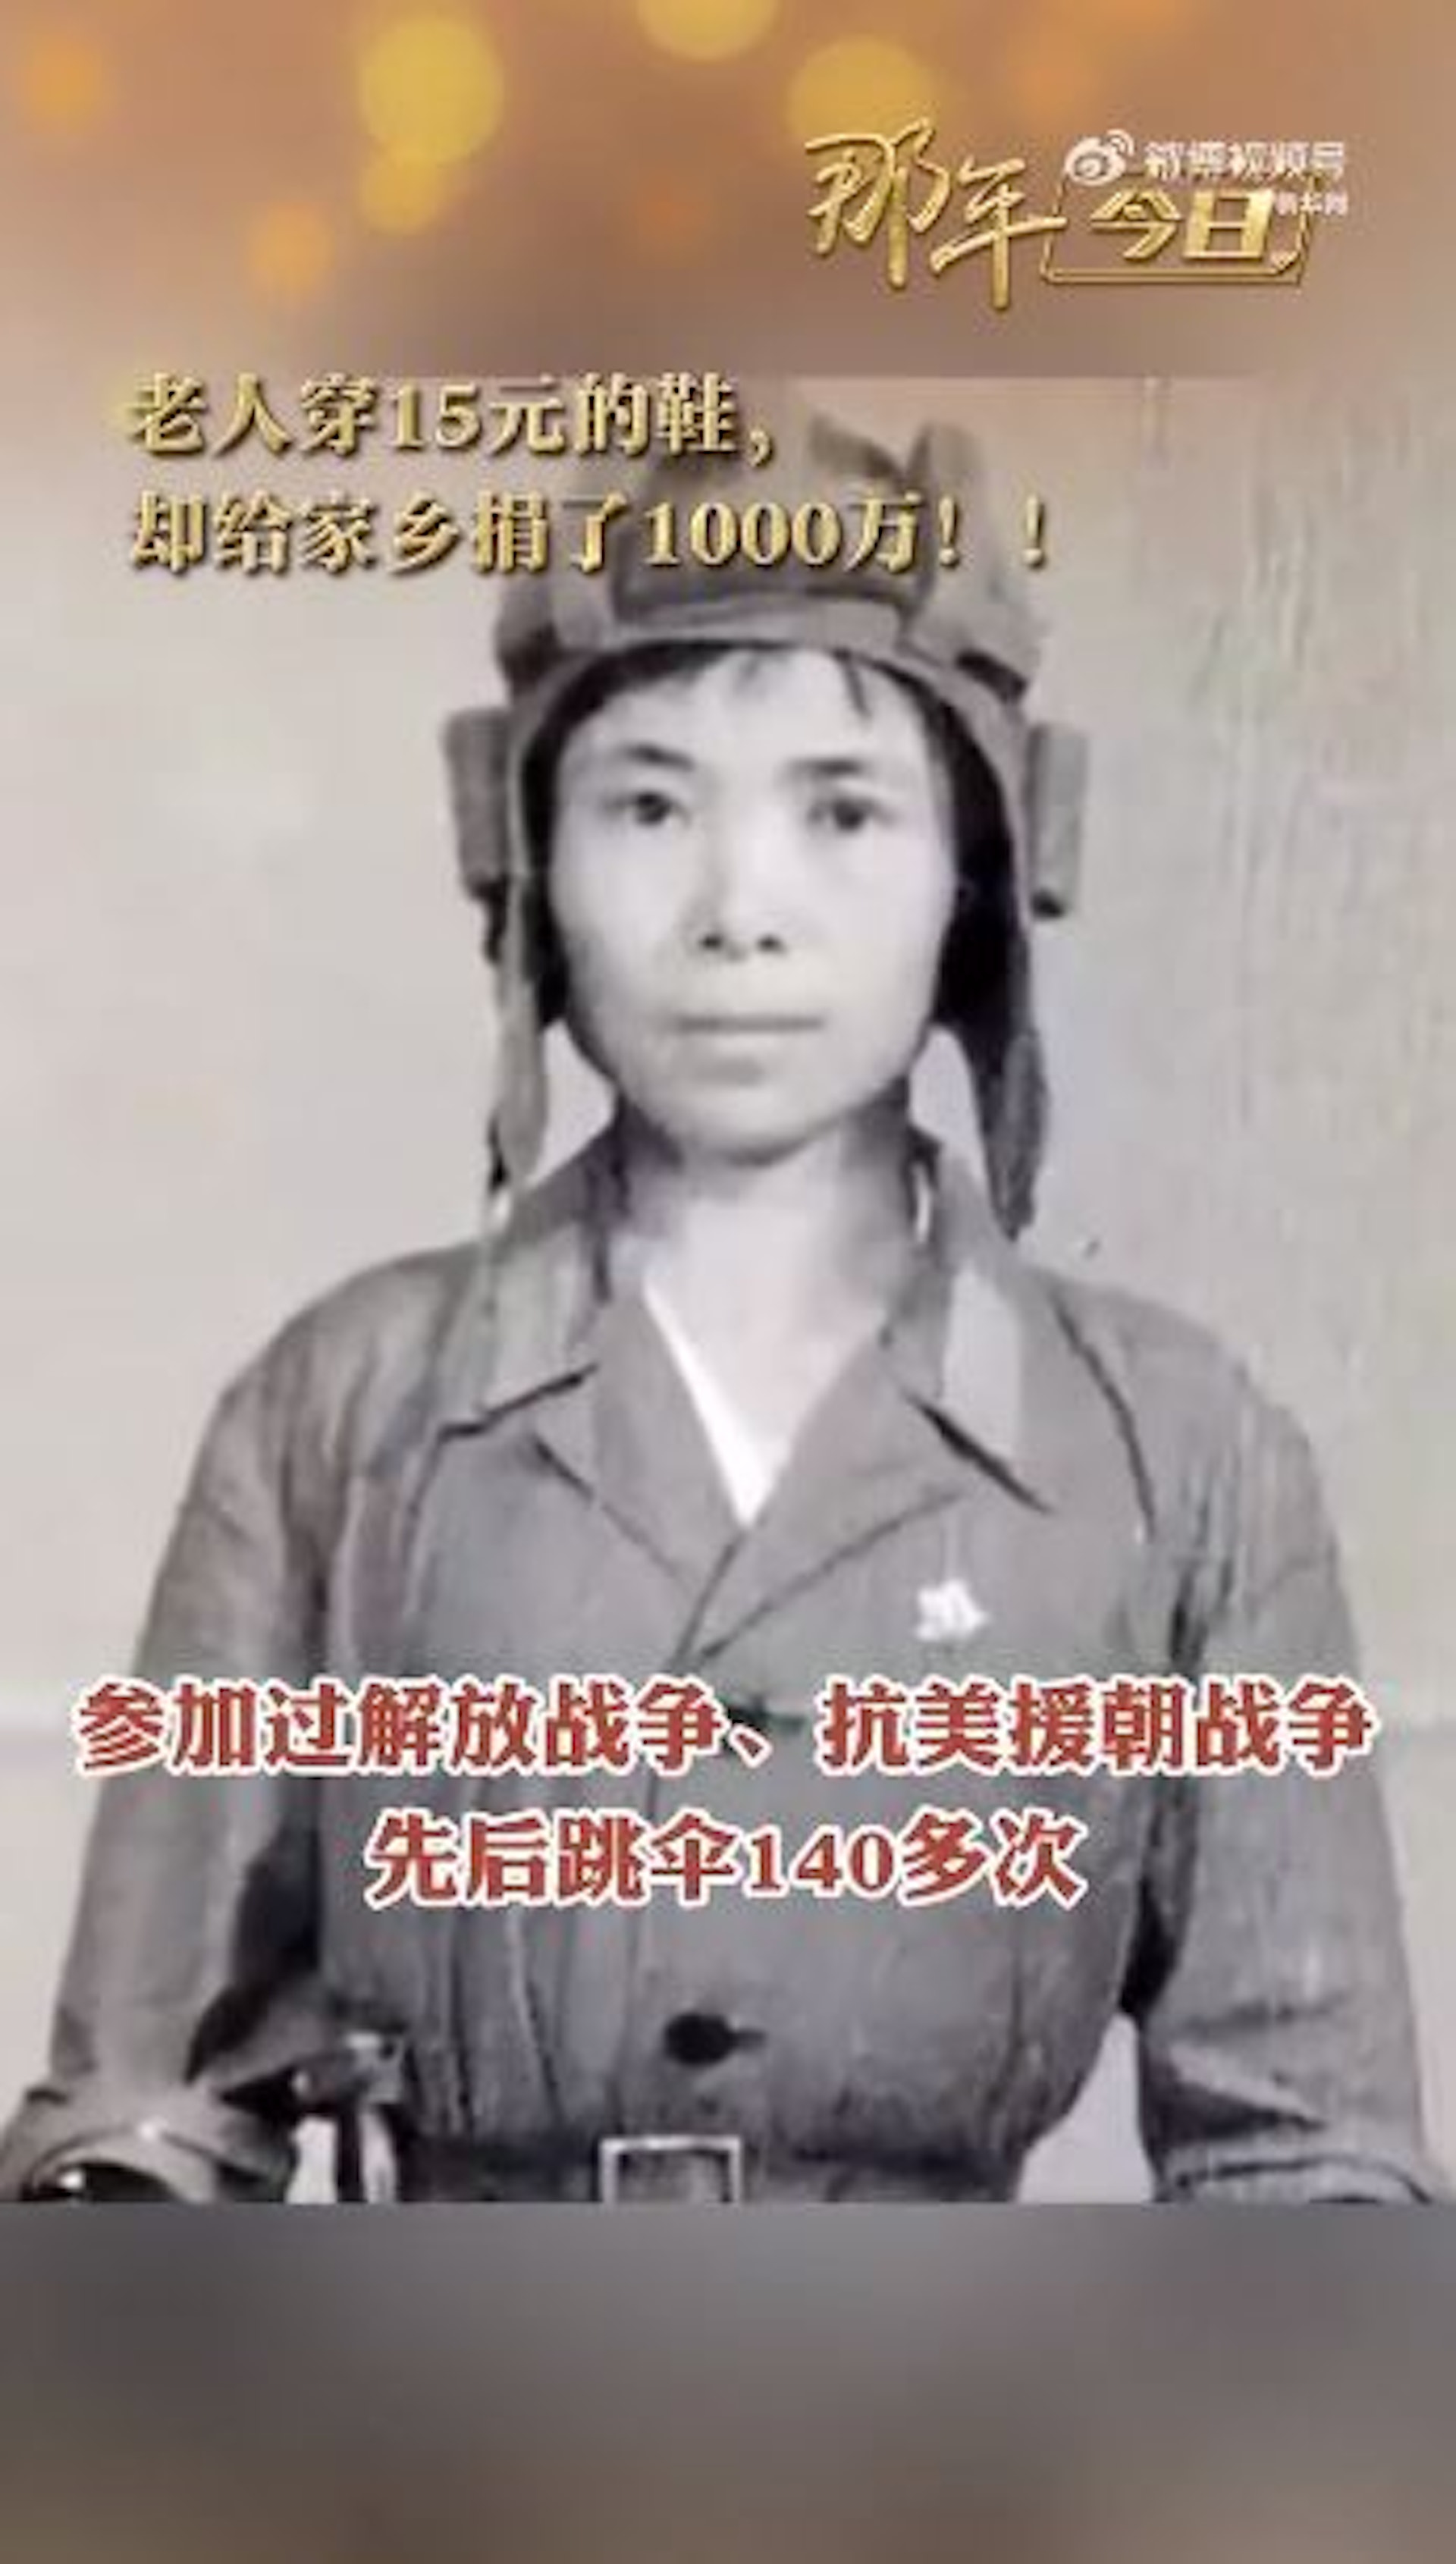 老婦名叫馬旭，是內地第一代女空降兵，參加過解放戰爭、抗美援朝戰爭，跳傘逾140次。（影片截圖）